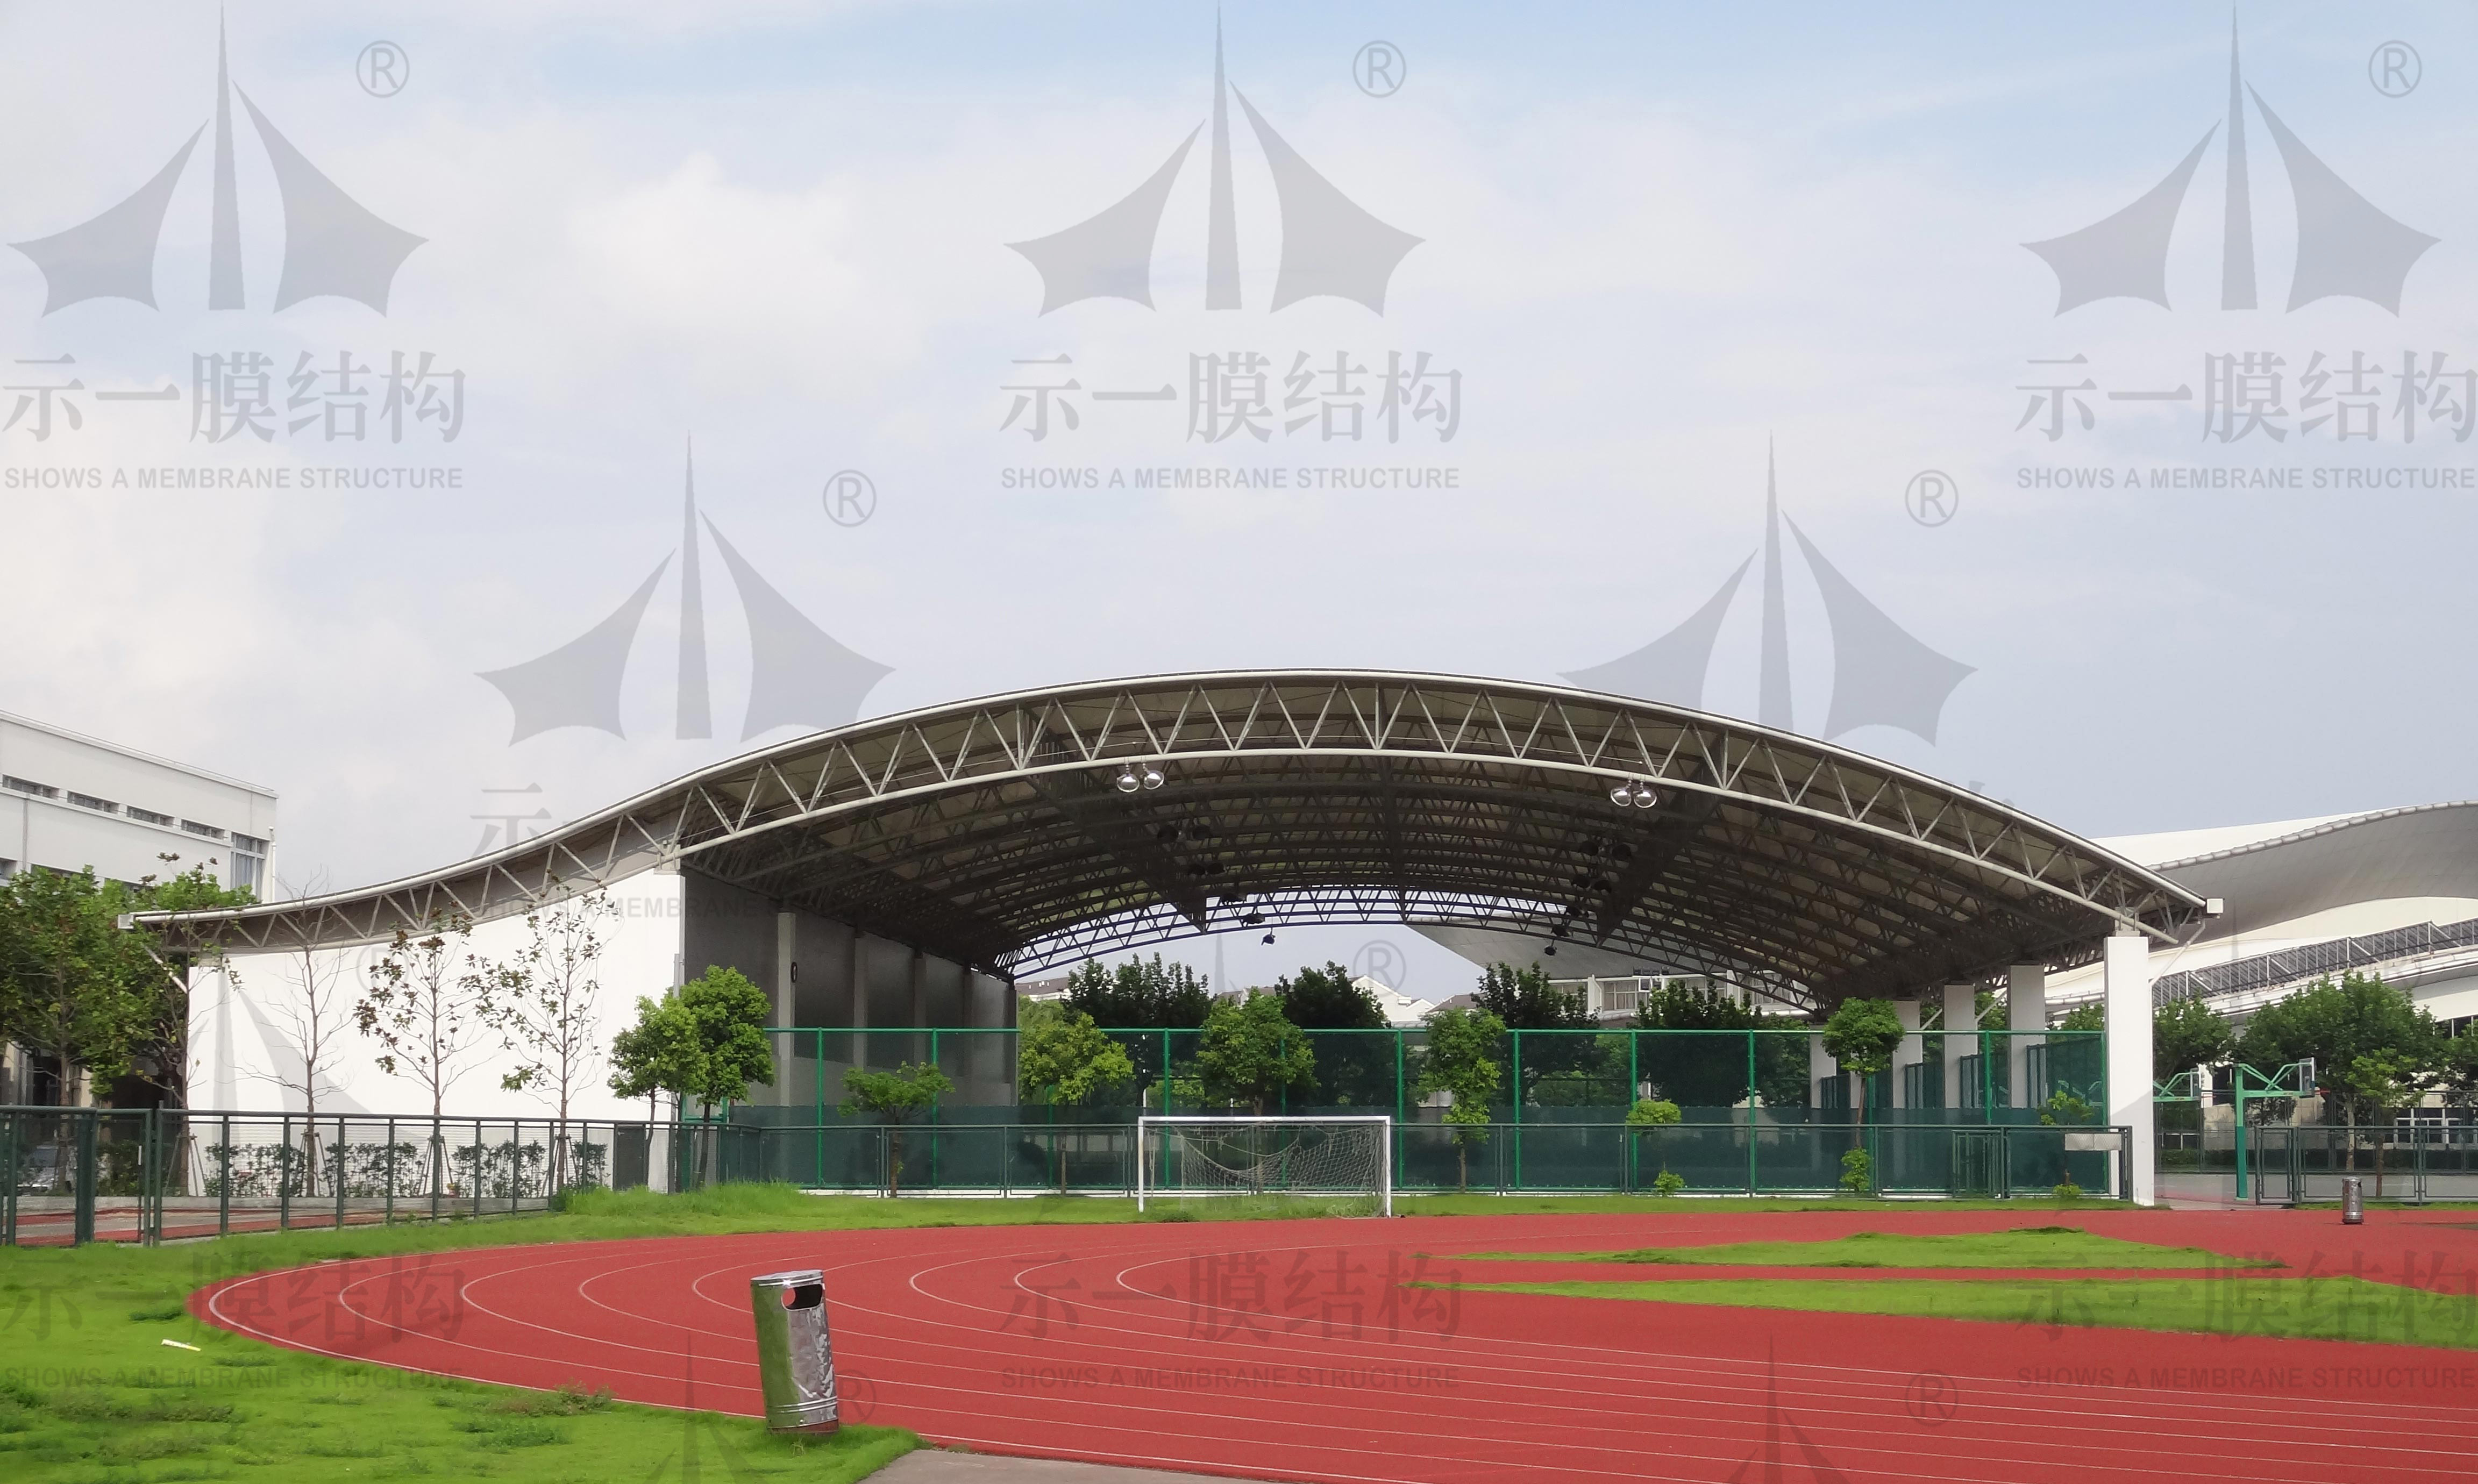 上海示一膜结构上海第二工业大学网球场膜结构雨棚